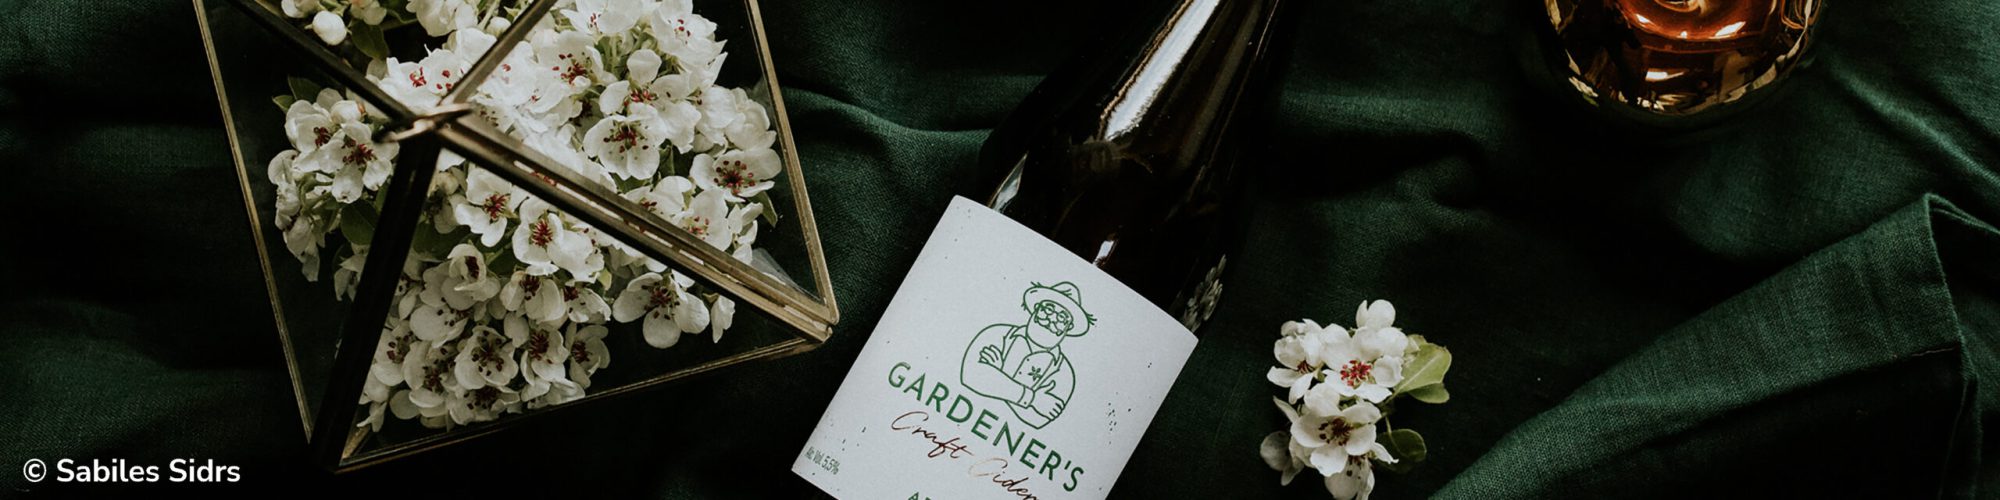 Gardener's Craft Cider Header